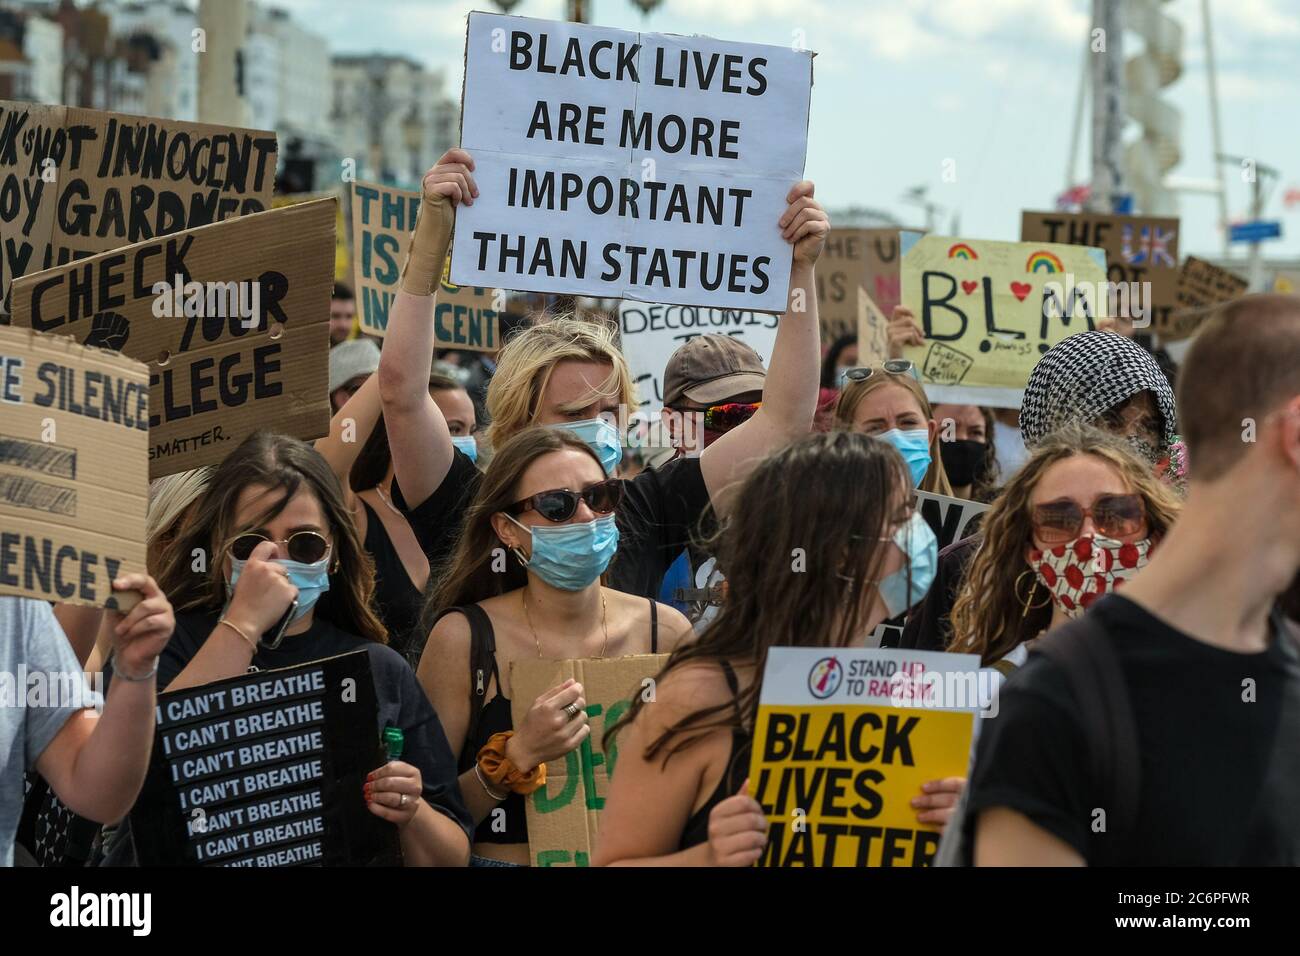 Brighton Seafront/Palace Pier, Brighton, Reino Unido. 11 de julio de 2020. Black Lives importan marchas de protesta a lo largo del paseo marítimo antes de dirigirse hacia el norte hacia la ciudad. Imagen de crédito: Julie Edwards/Alamy Live News Foto de stock